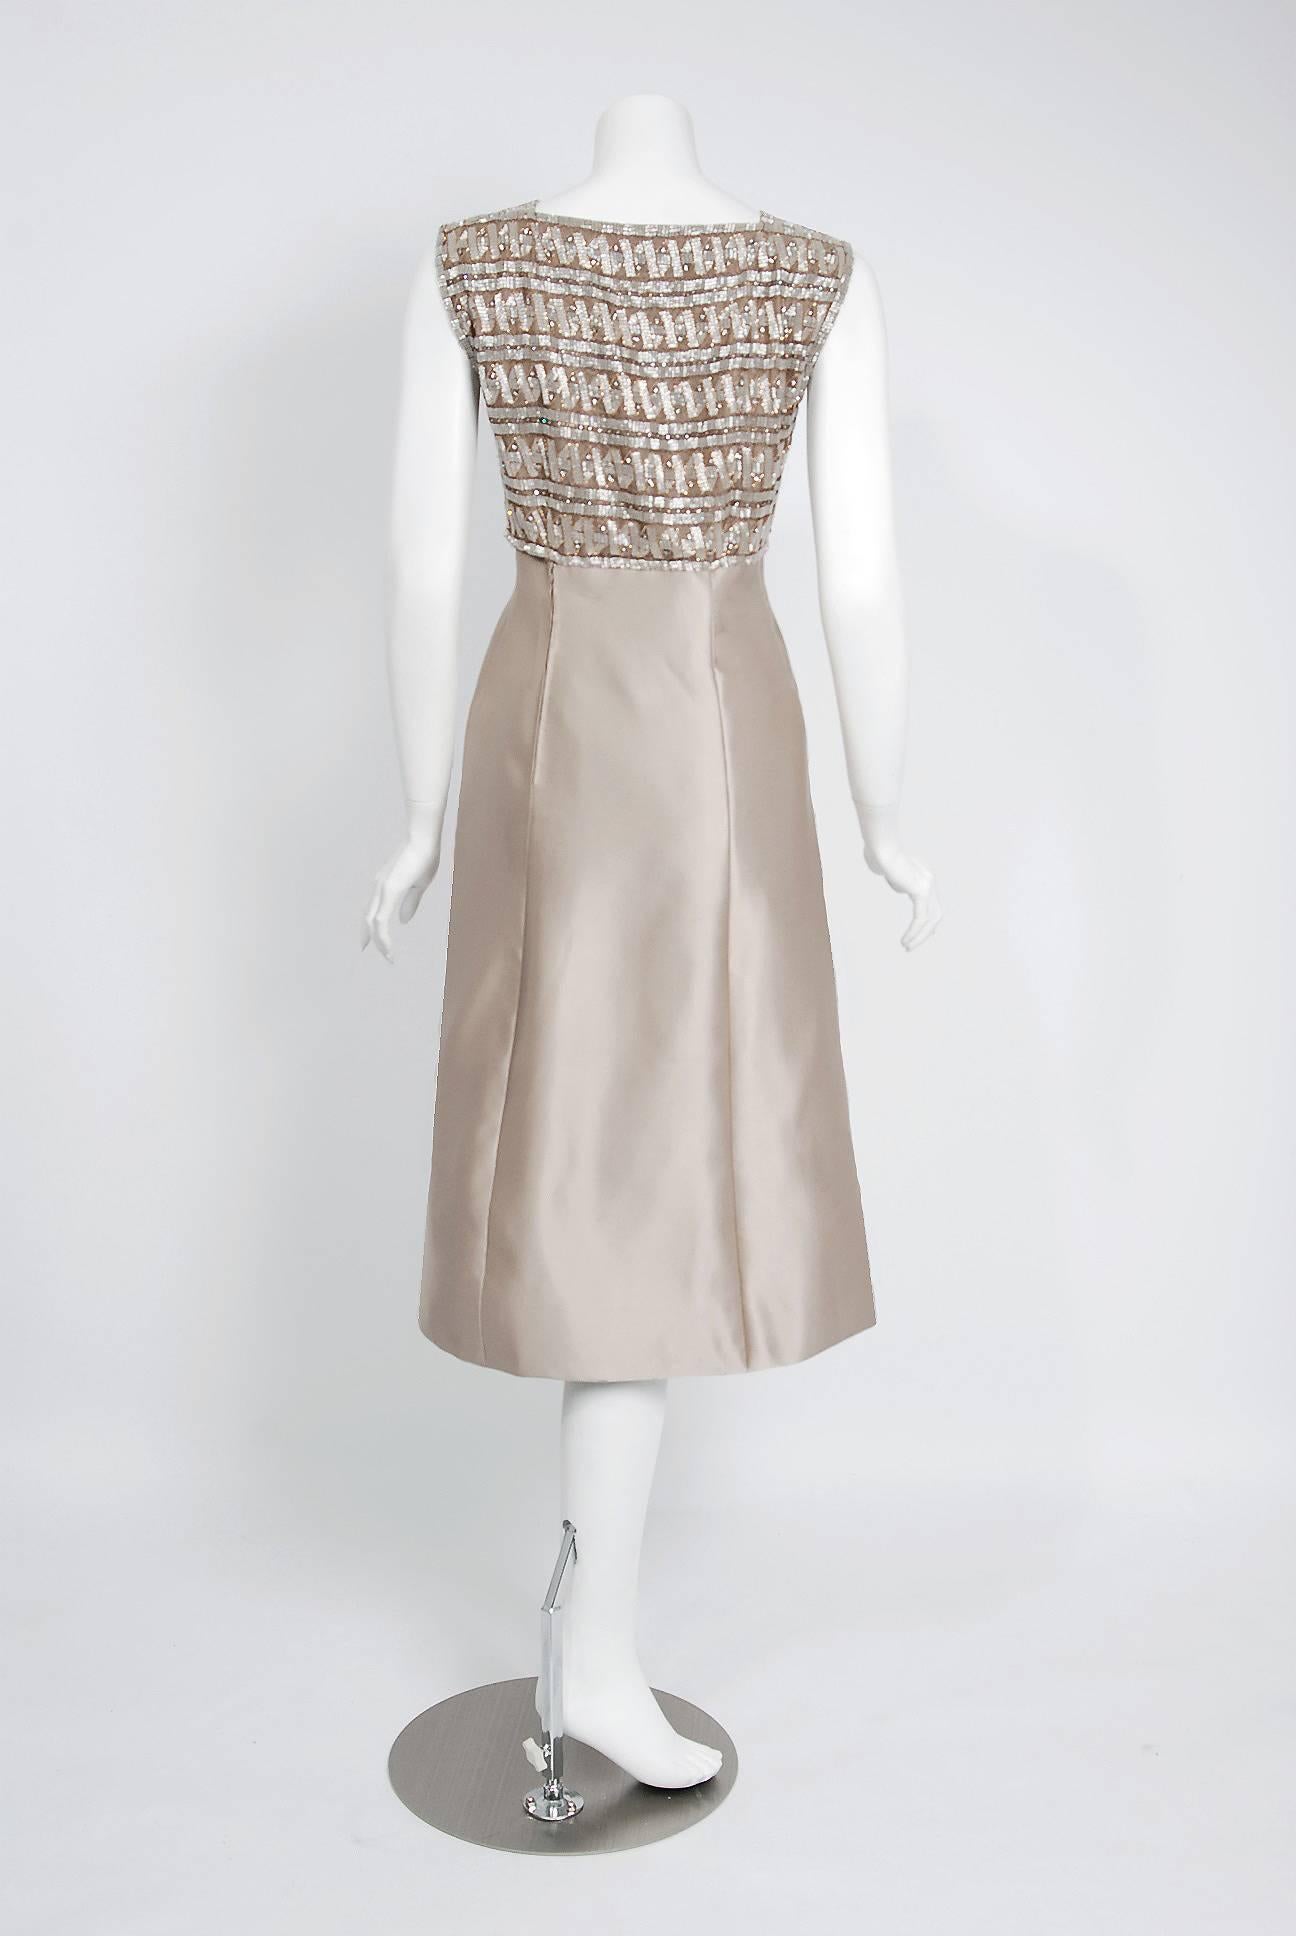 1967 dresses